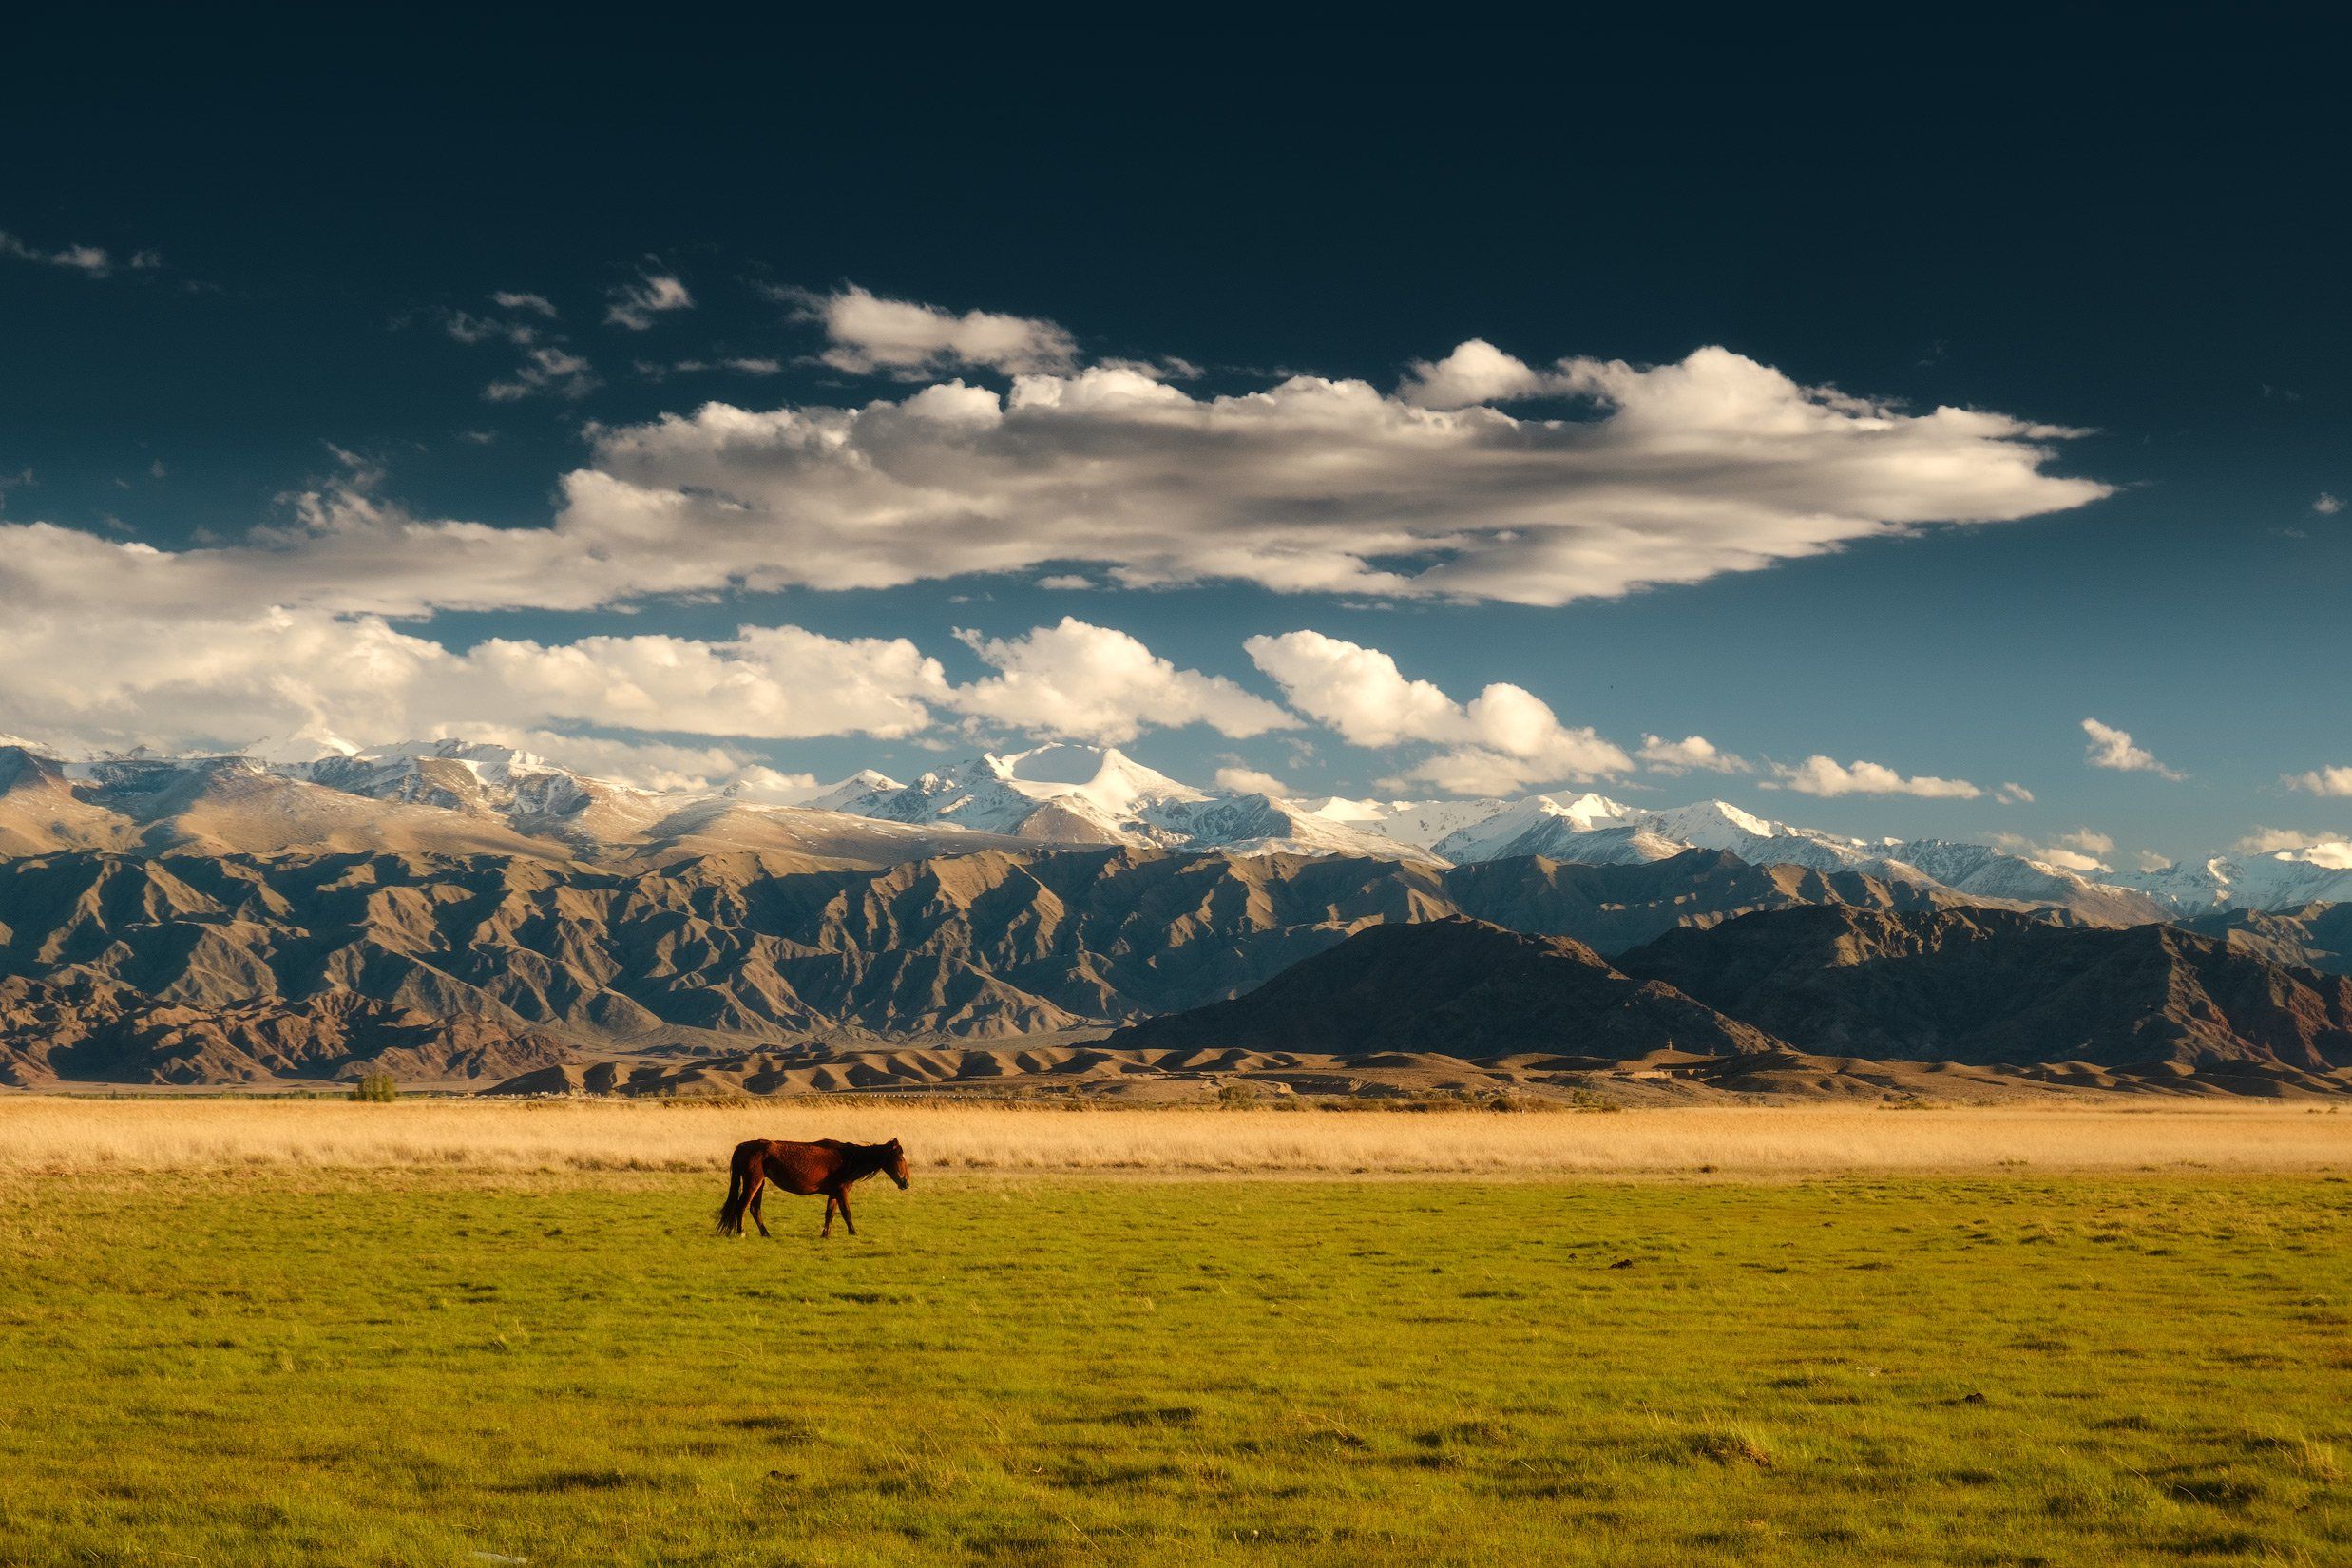 киргизия, кыргызстан, азия, горы, луг, скалы, пейзаж, весна, ущелье, джайлоо, пастбище, конь, лошадь, Оборотов Алексей